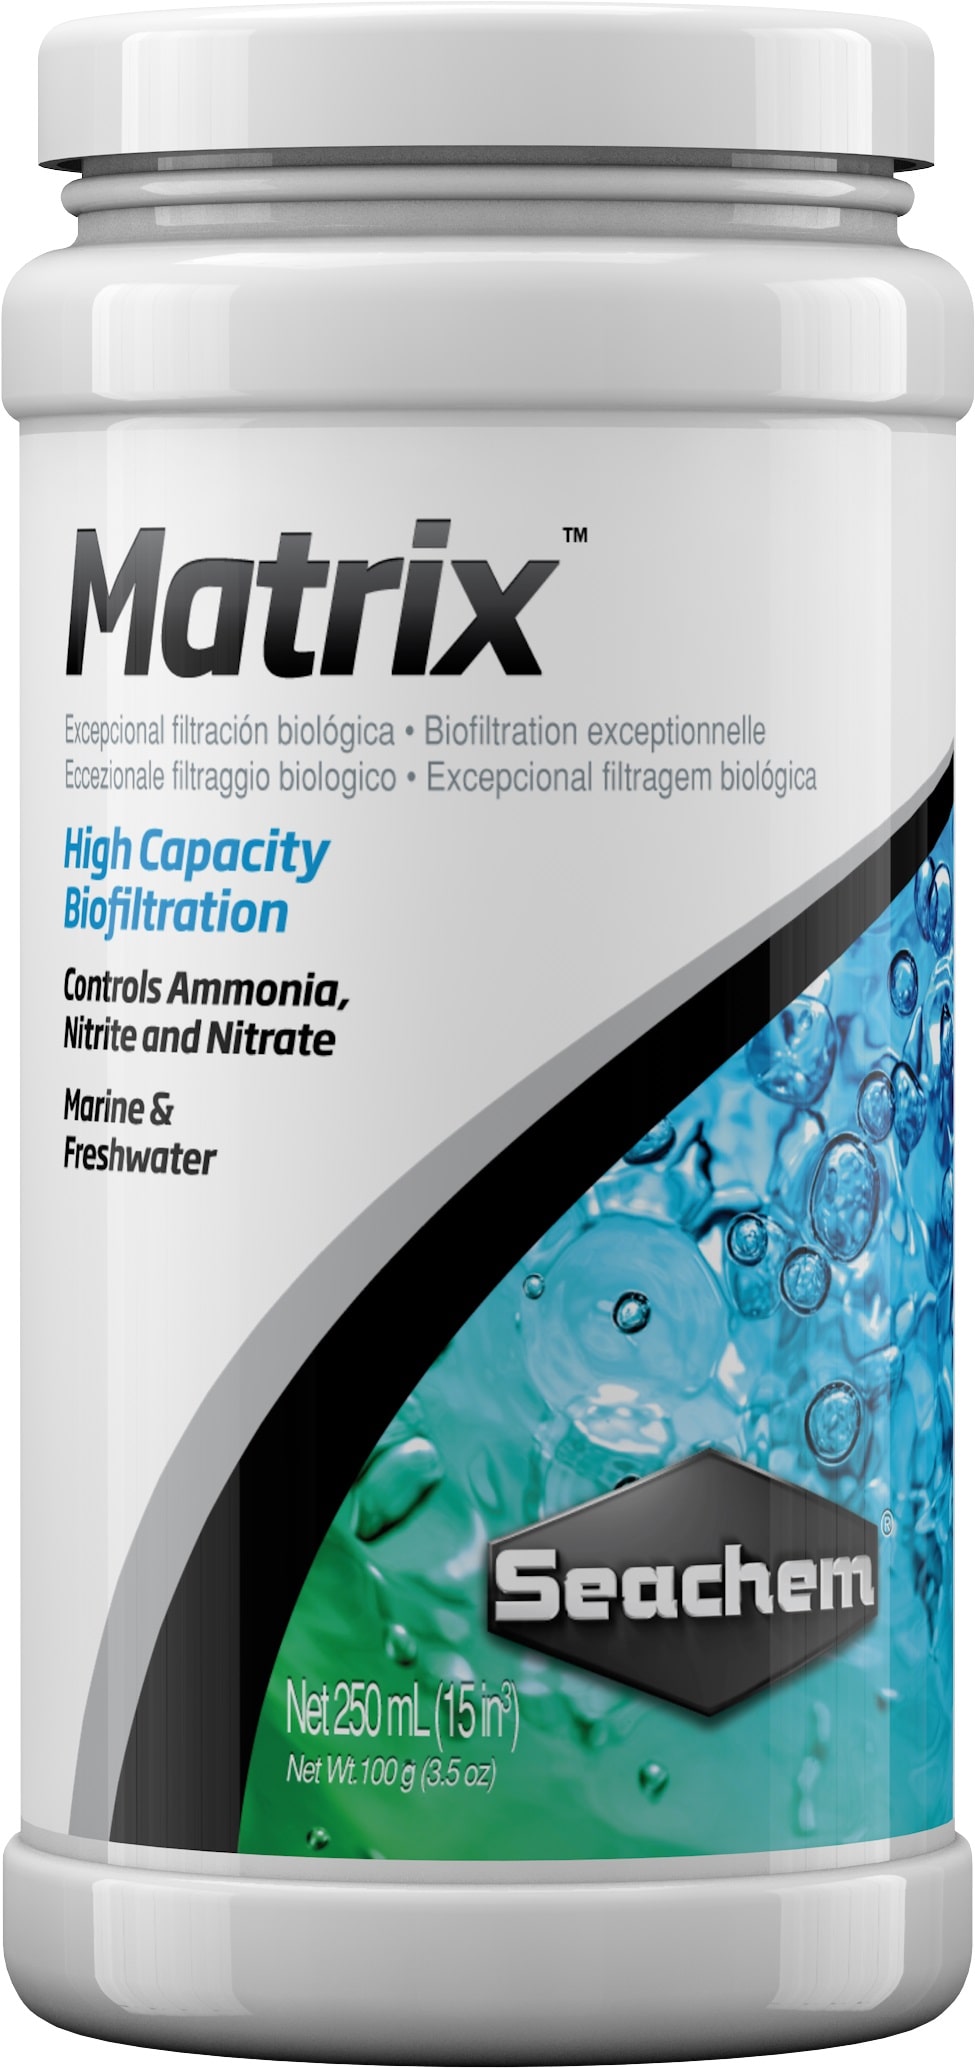 SEACHEM Matrix 250 ml masse de filtration biologique à haute densité